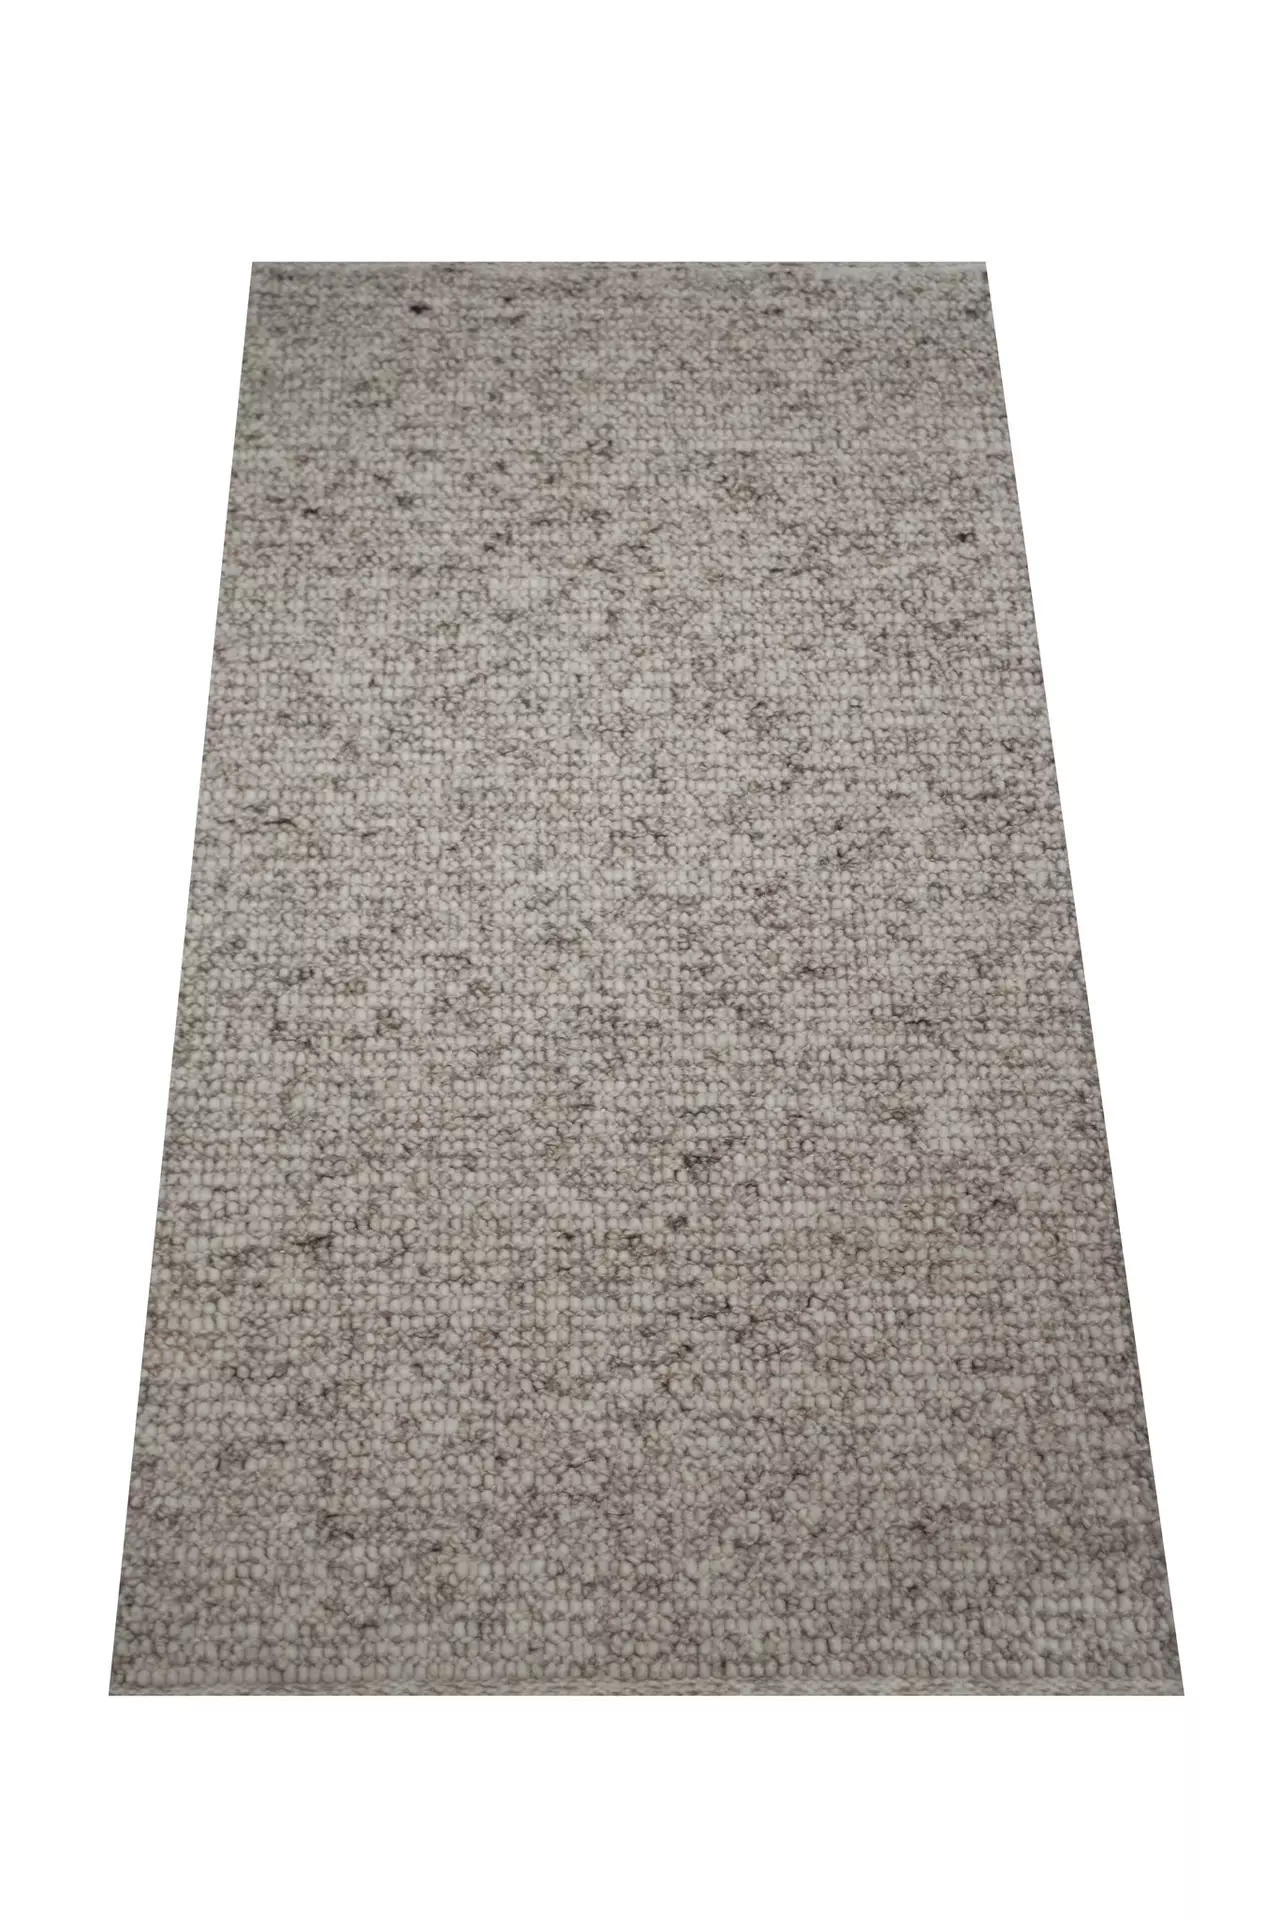 Handwebteppich Weitblick Polaris Allgäuer Teppichmanufaktur Textil 250 x 300 cm